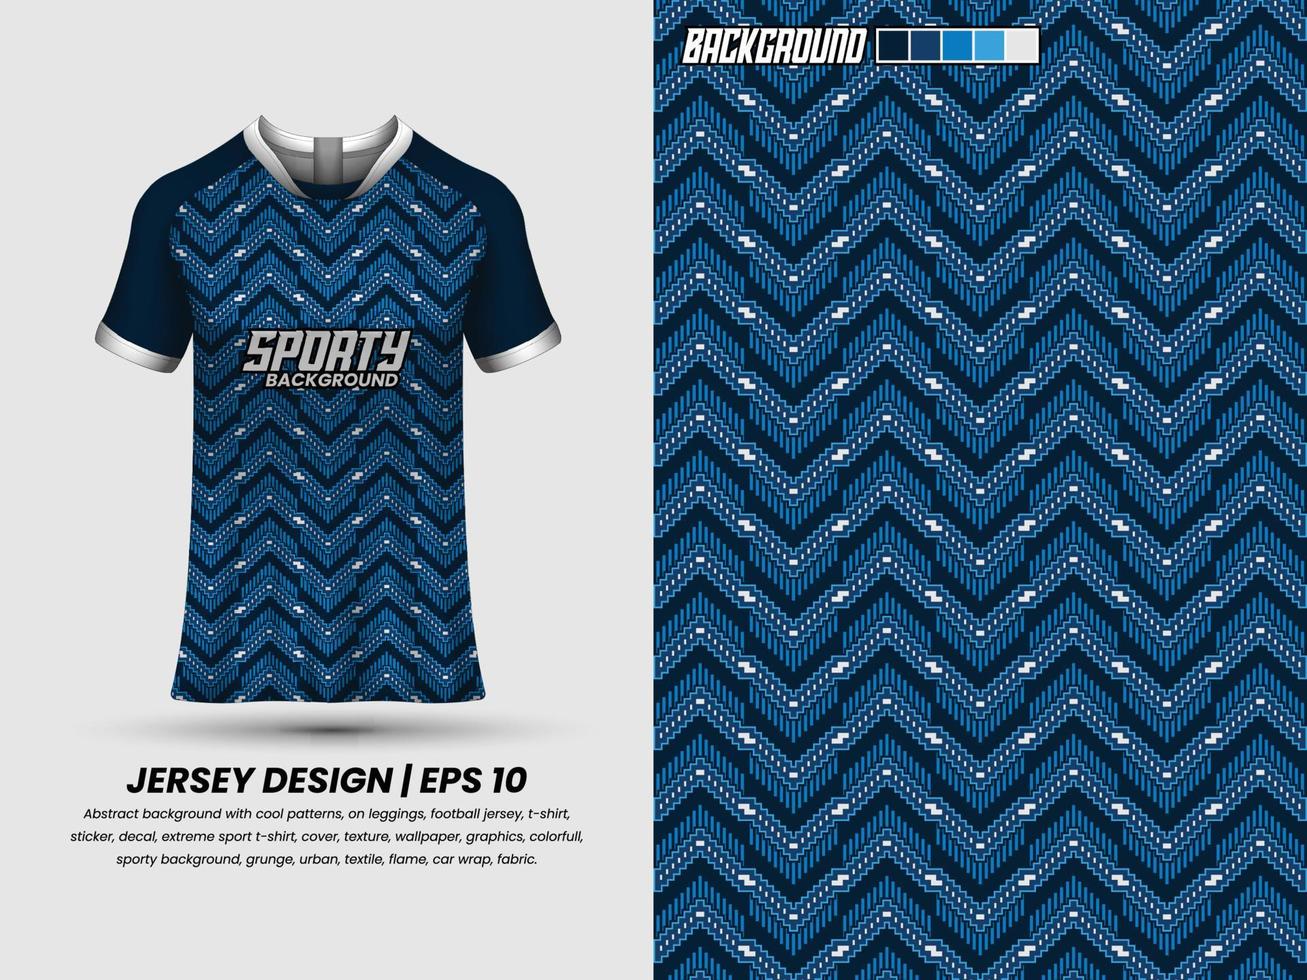 calcio maglia design per sublimazione, sport t camicia disegno, modello maglia vettore